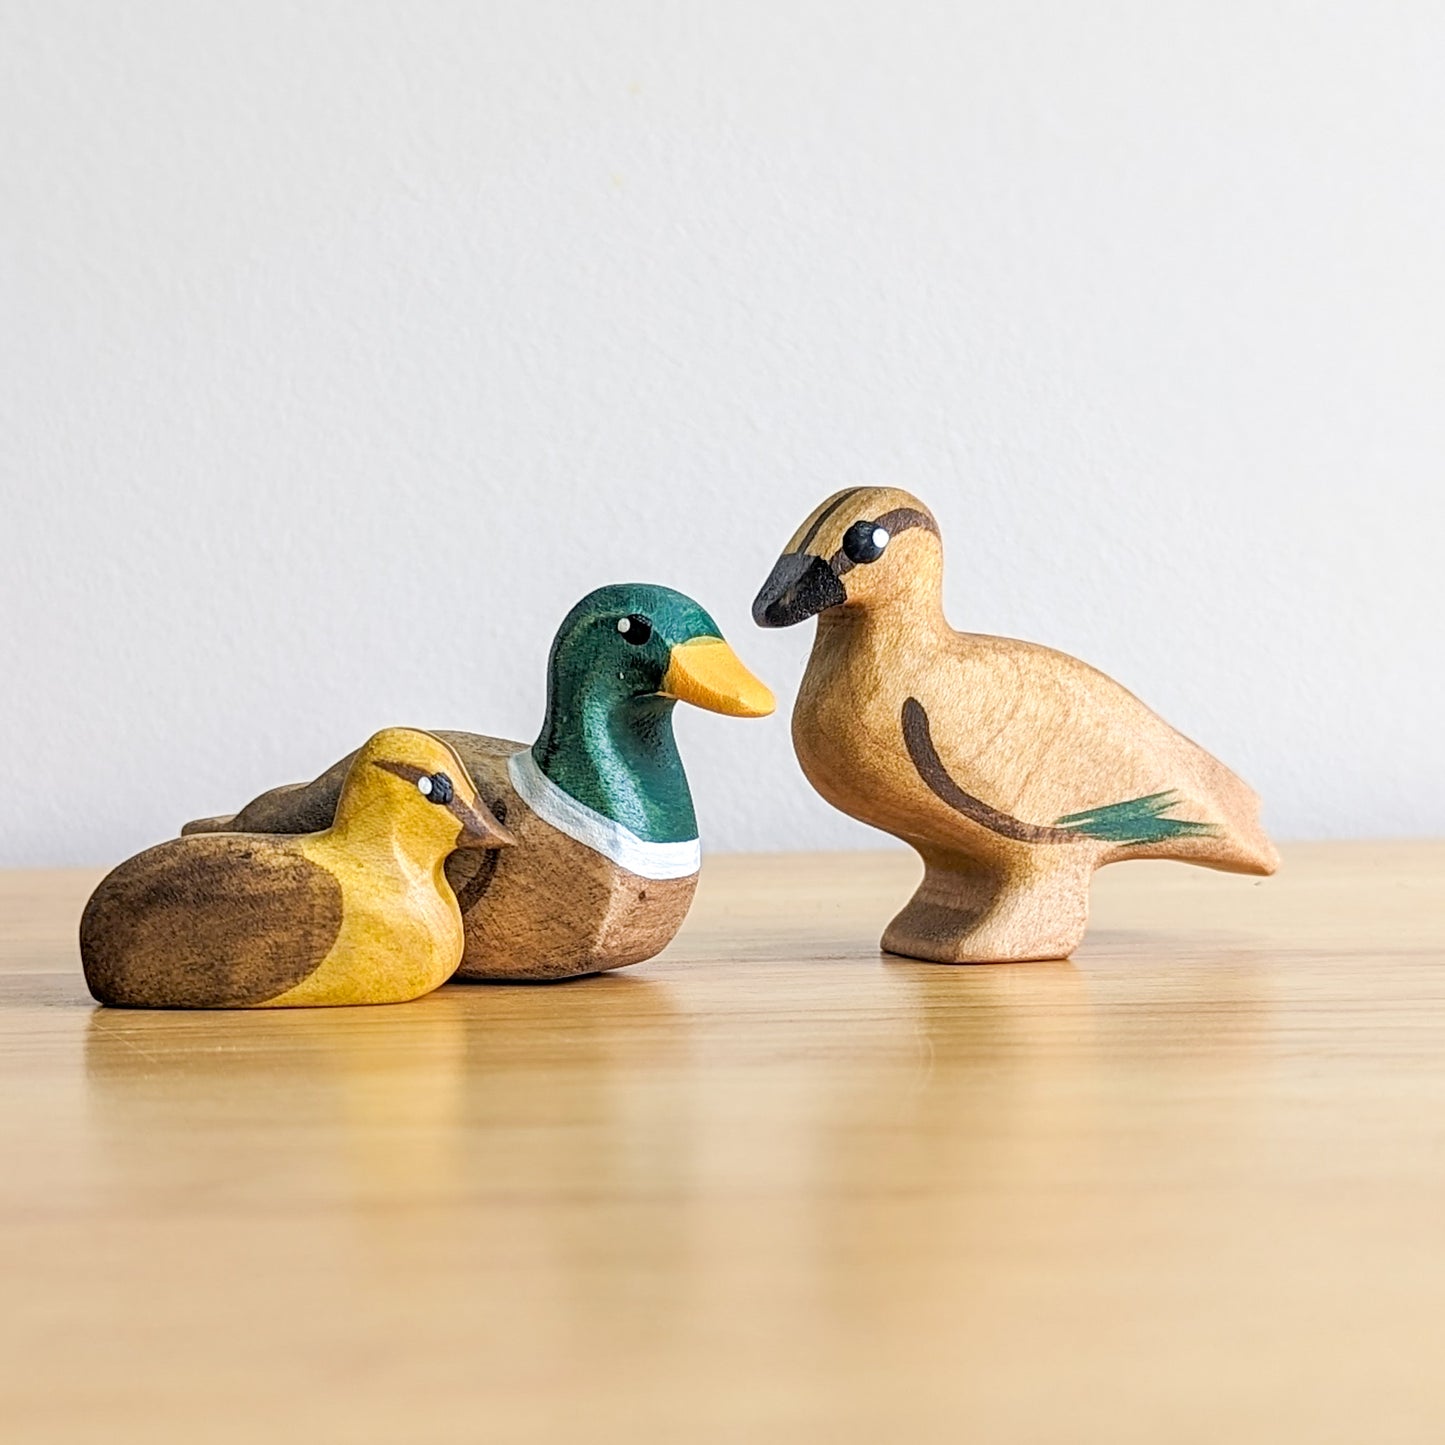 Mallard Duck Wooden Toy